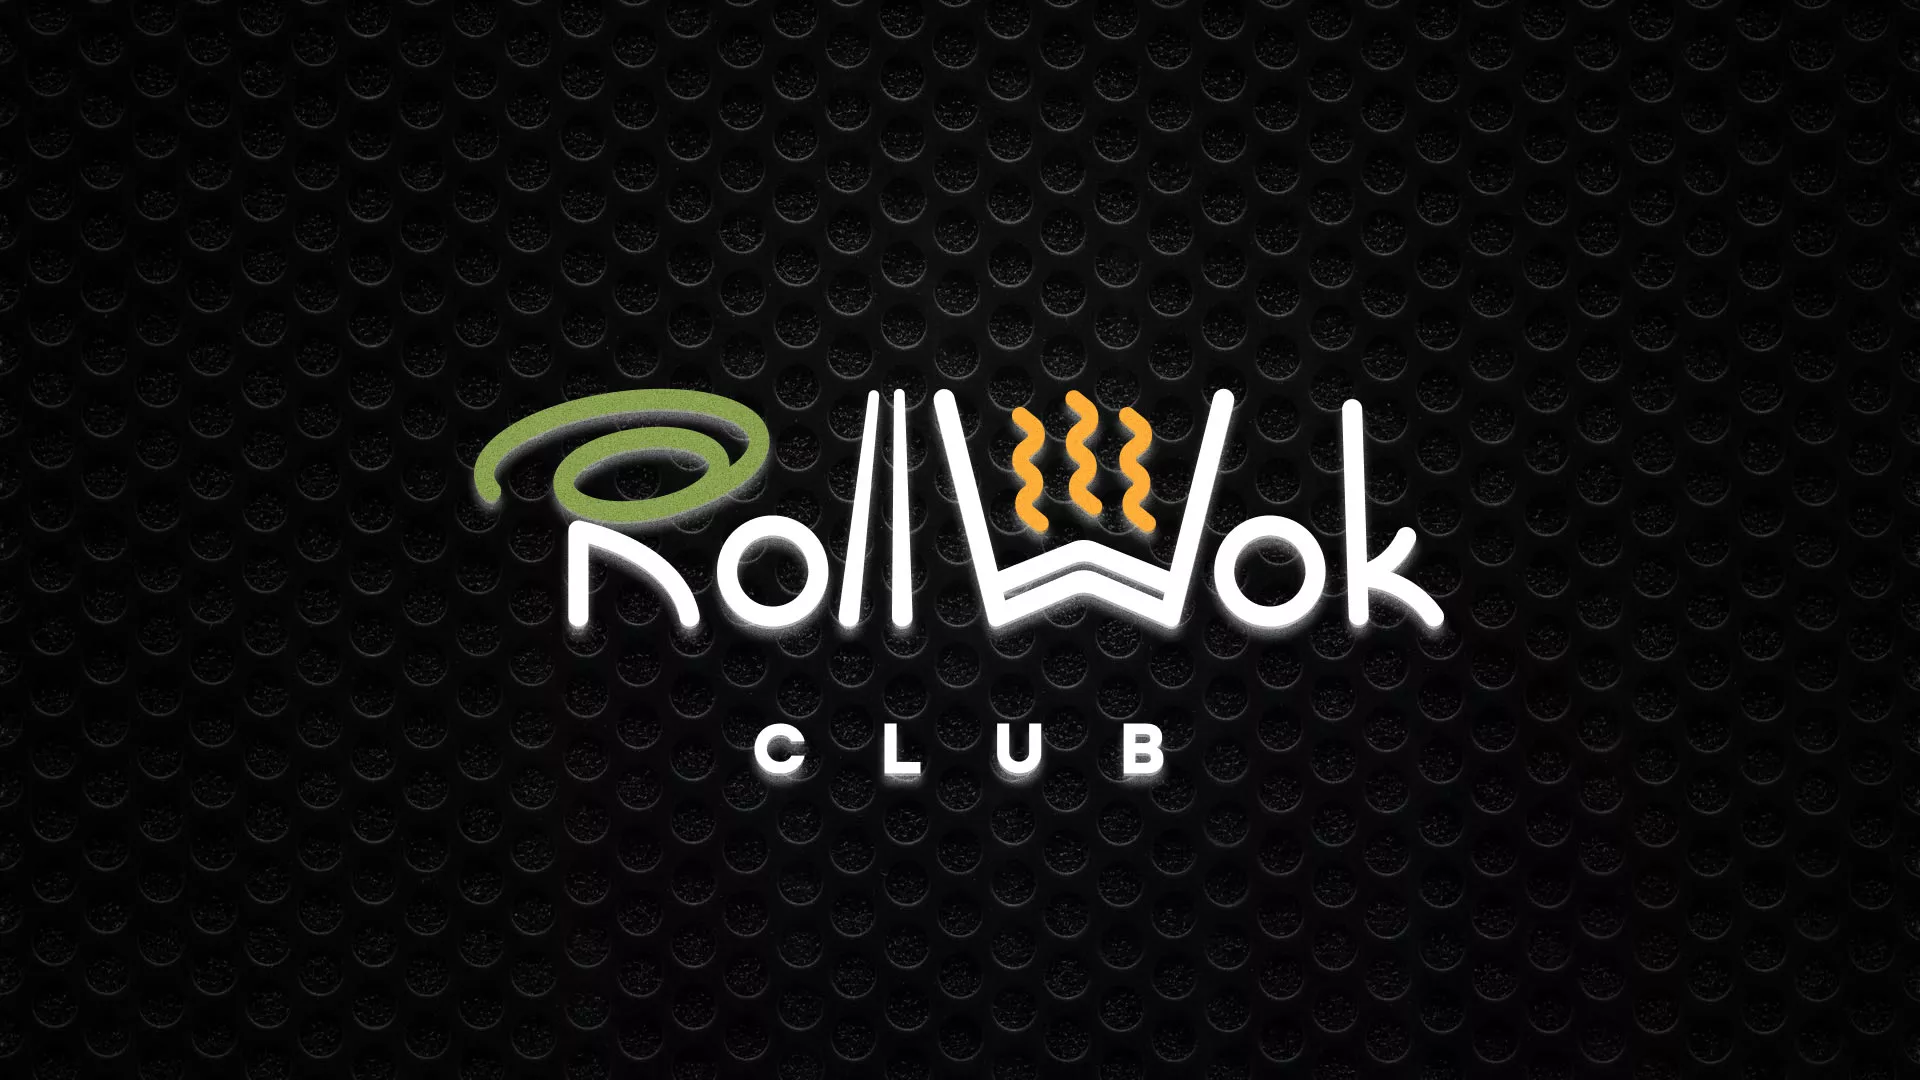 Брендирование торговых точек суши-бара «Roll Wok Club» в Славянске-на-Кубани